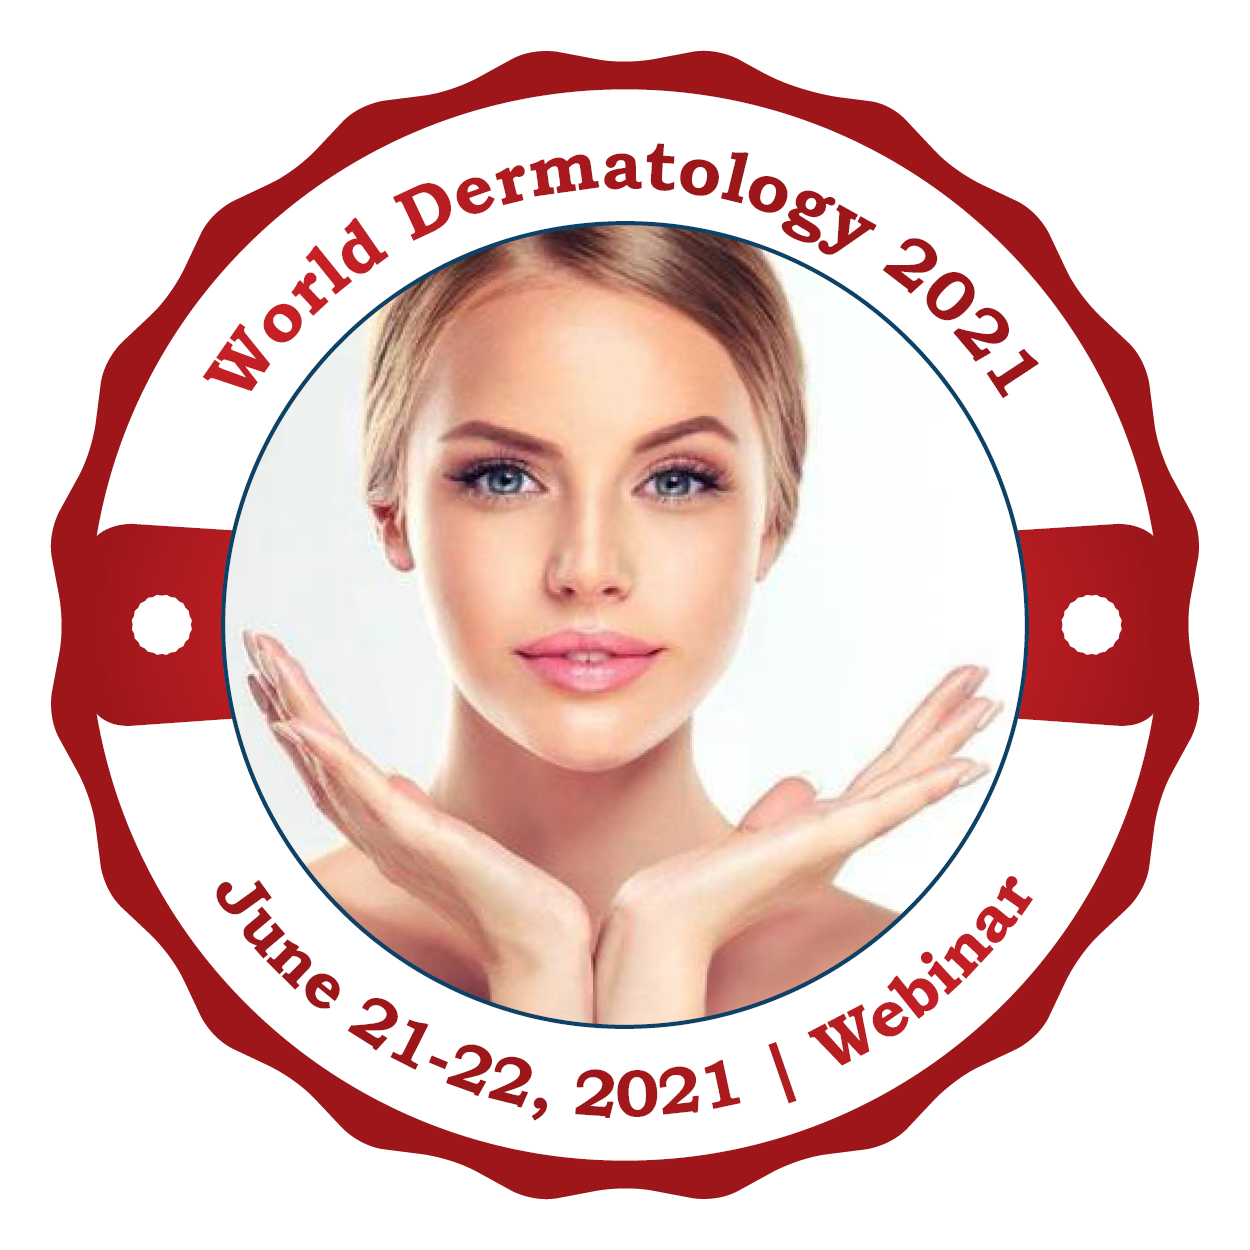 22nd World Dermatology Congress